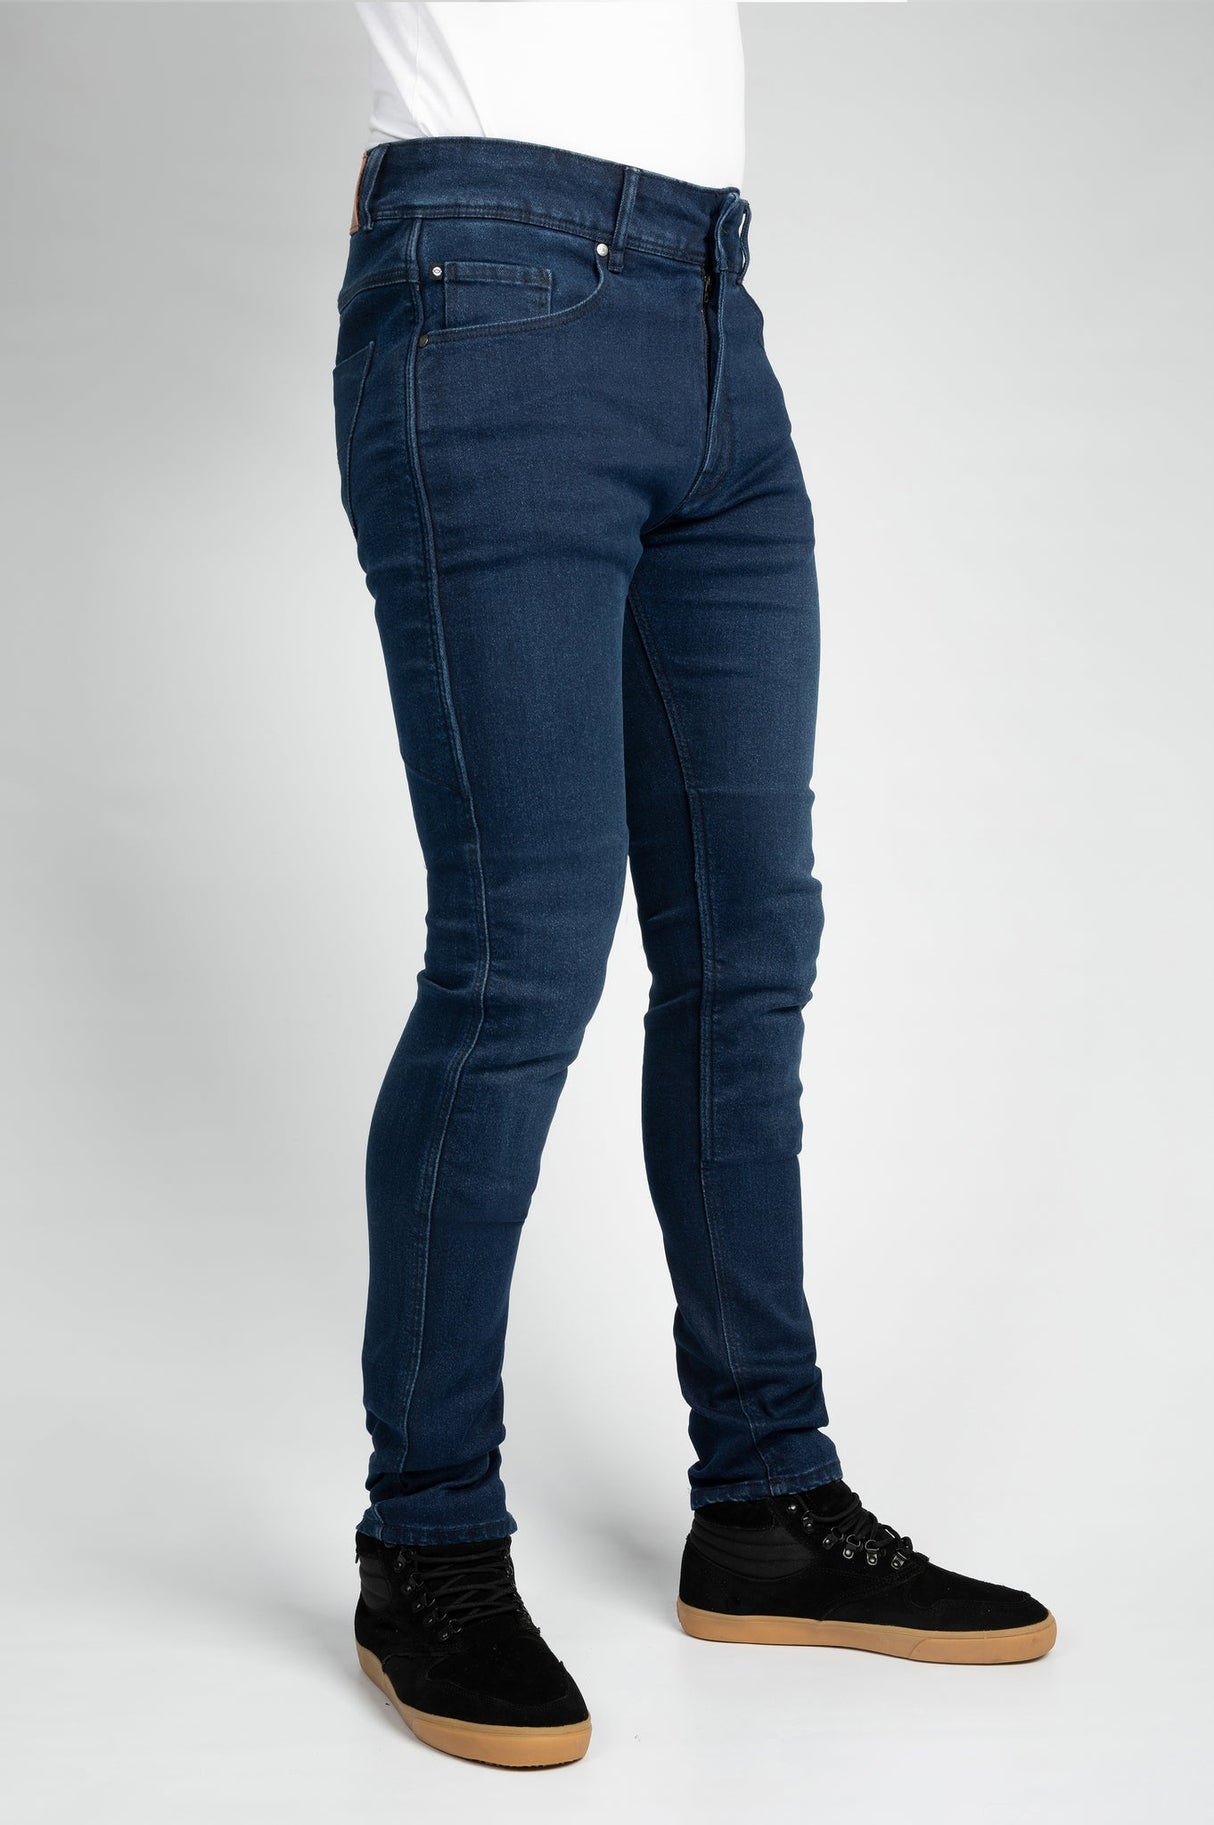 Bull-It 21 Covert Evo Slim Men'S Jeans (Long Leg) - Blue